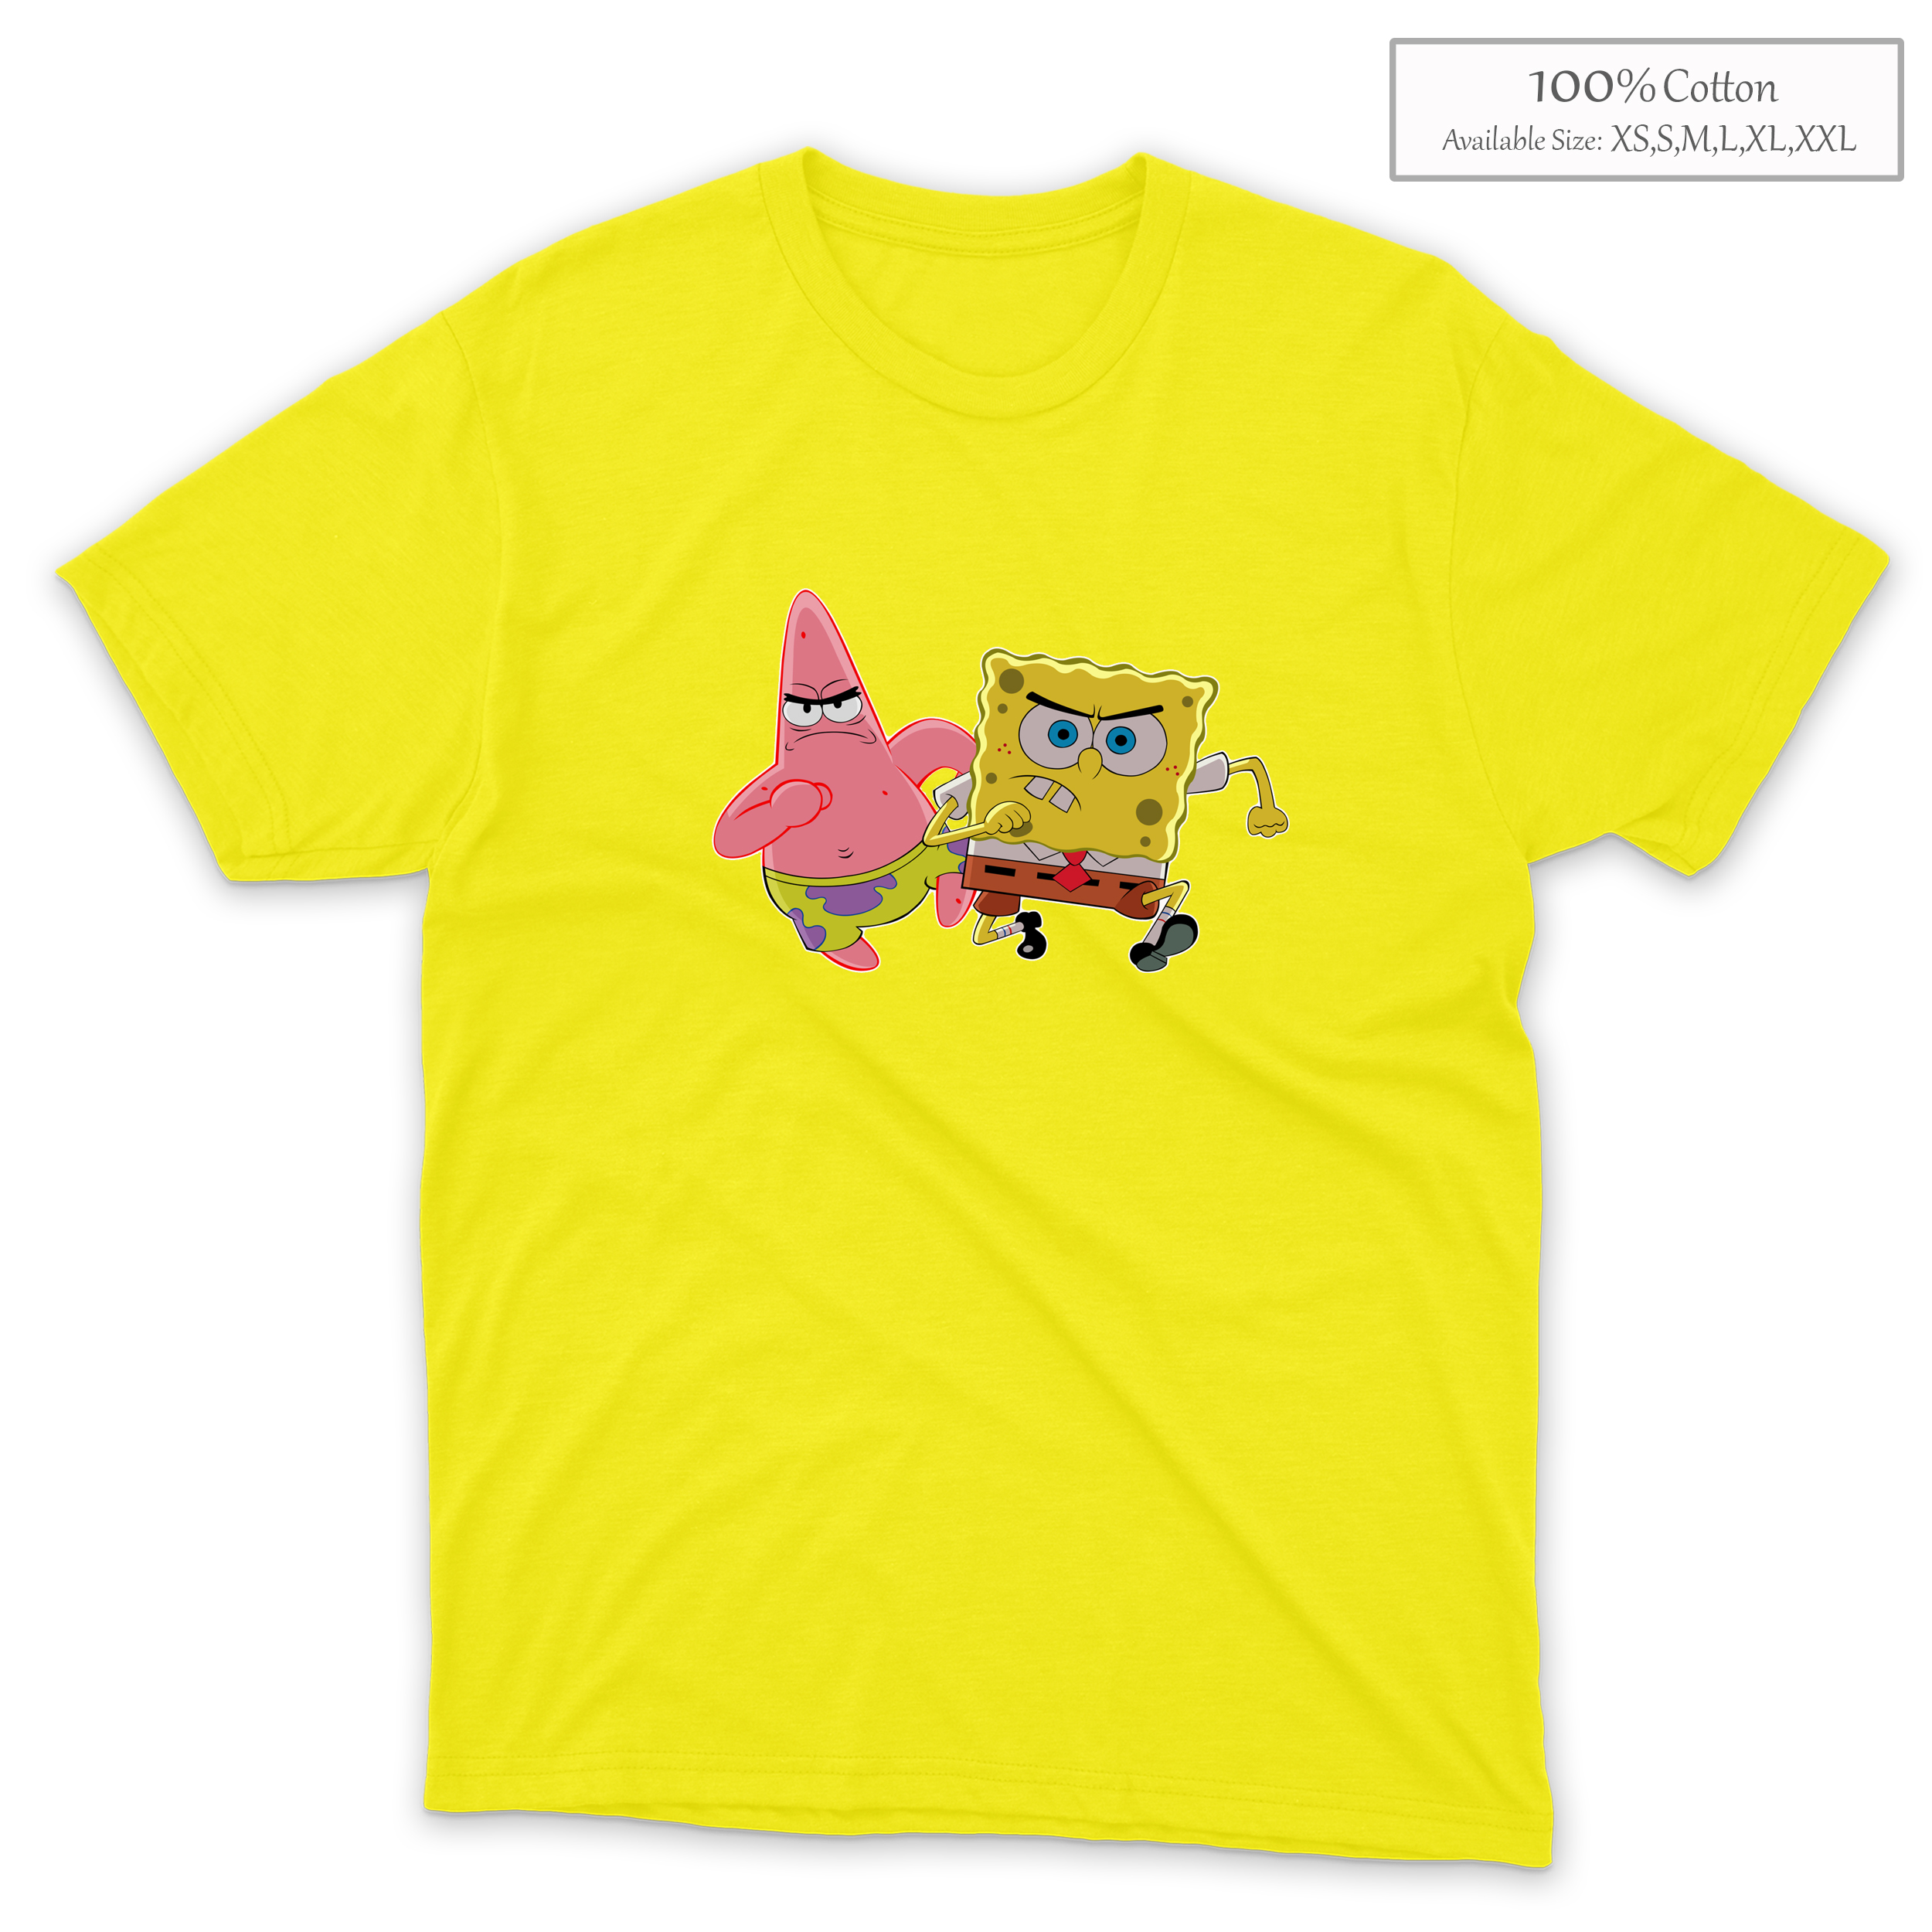 Cartoon Spongebob Squarepants Patrick Star Shirts (C10) | Lazada PH